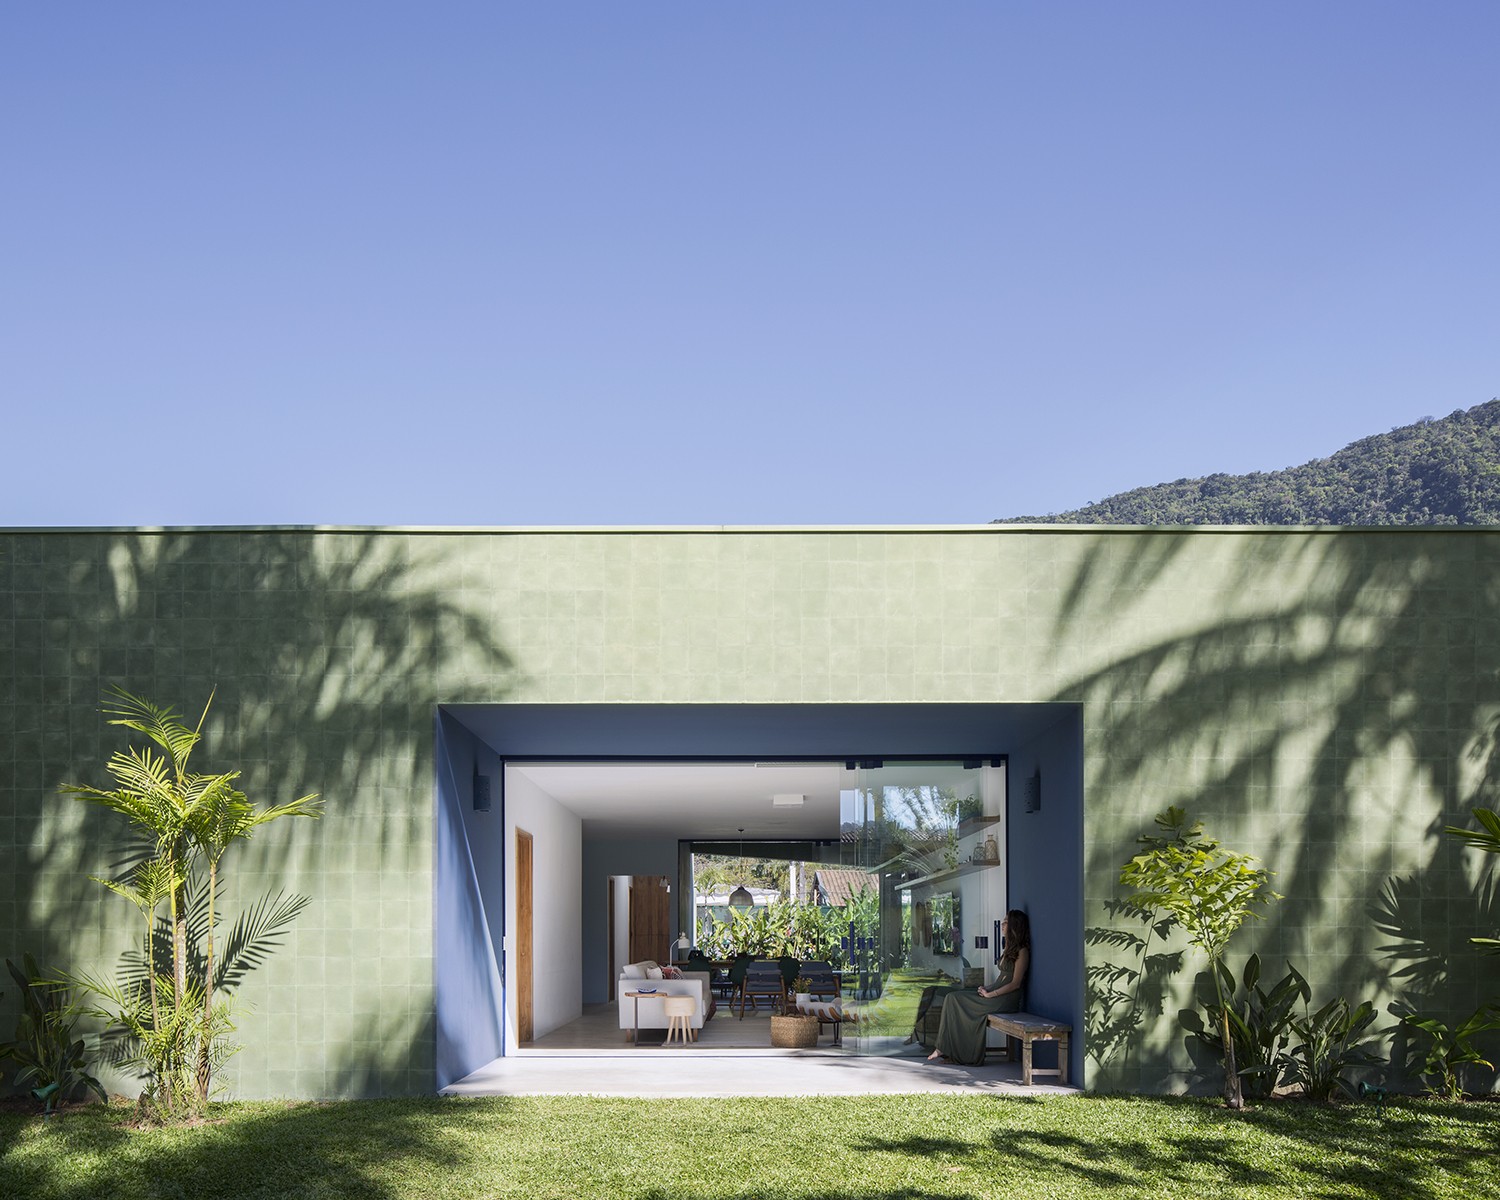 FACHADA | Os ladrilhos Rochbeton verdes da fachada integram a casa com a natureza (Foto: Carolina Lacaz / Divulgação)